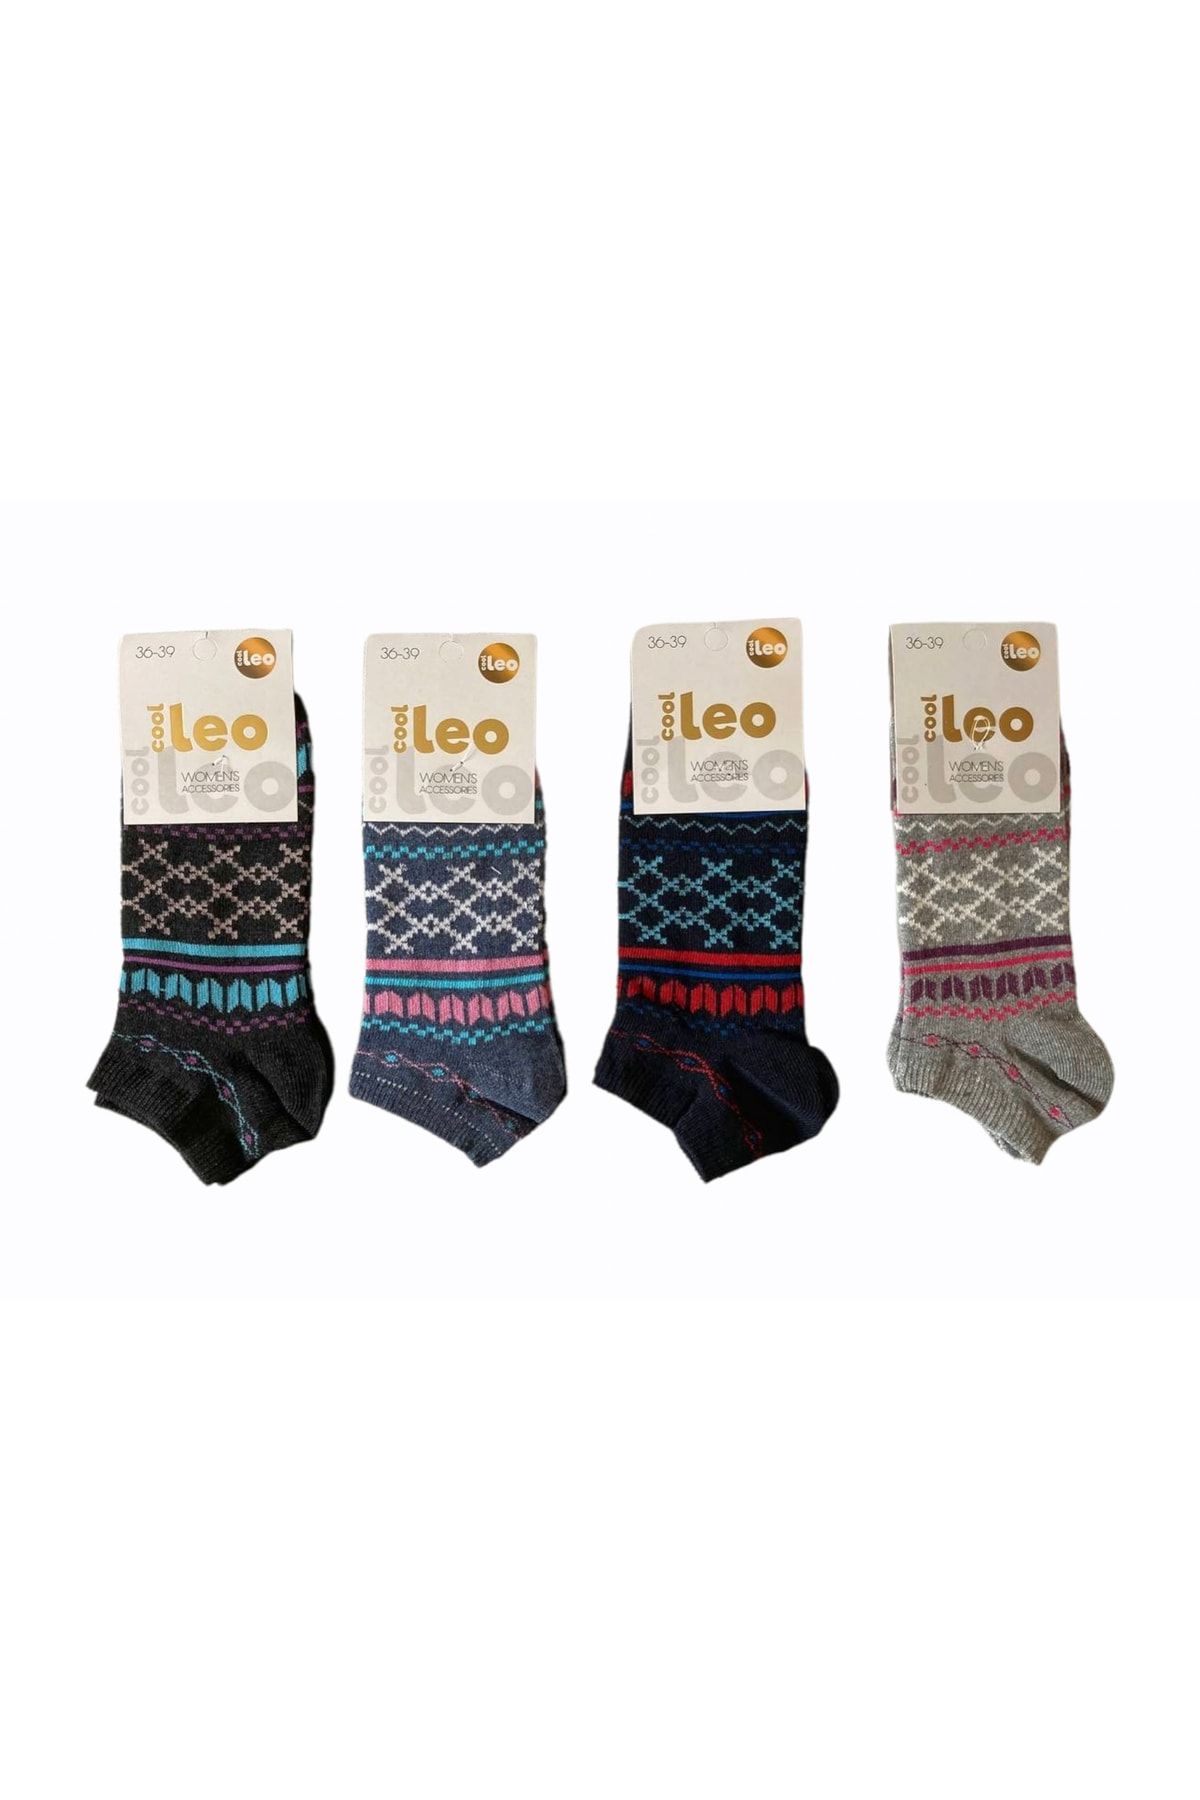 LEO 4'lü Desenli Mevsimlik Patik Çorap